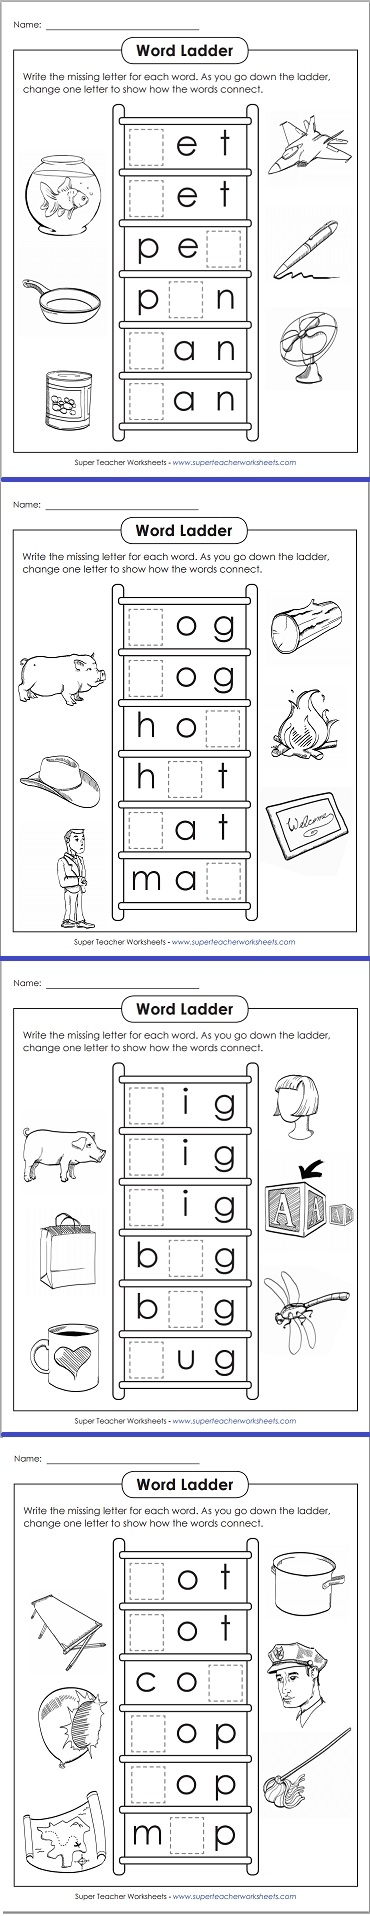 Word Ladder Worksheets